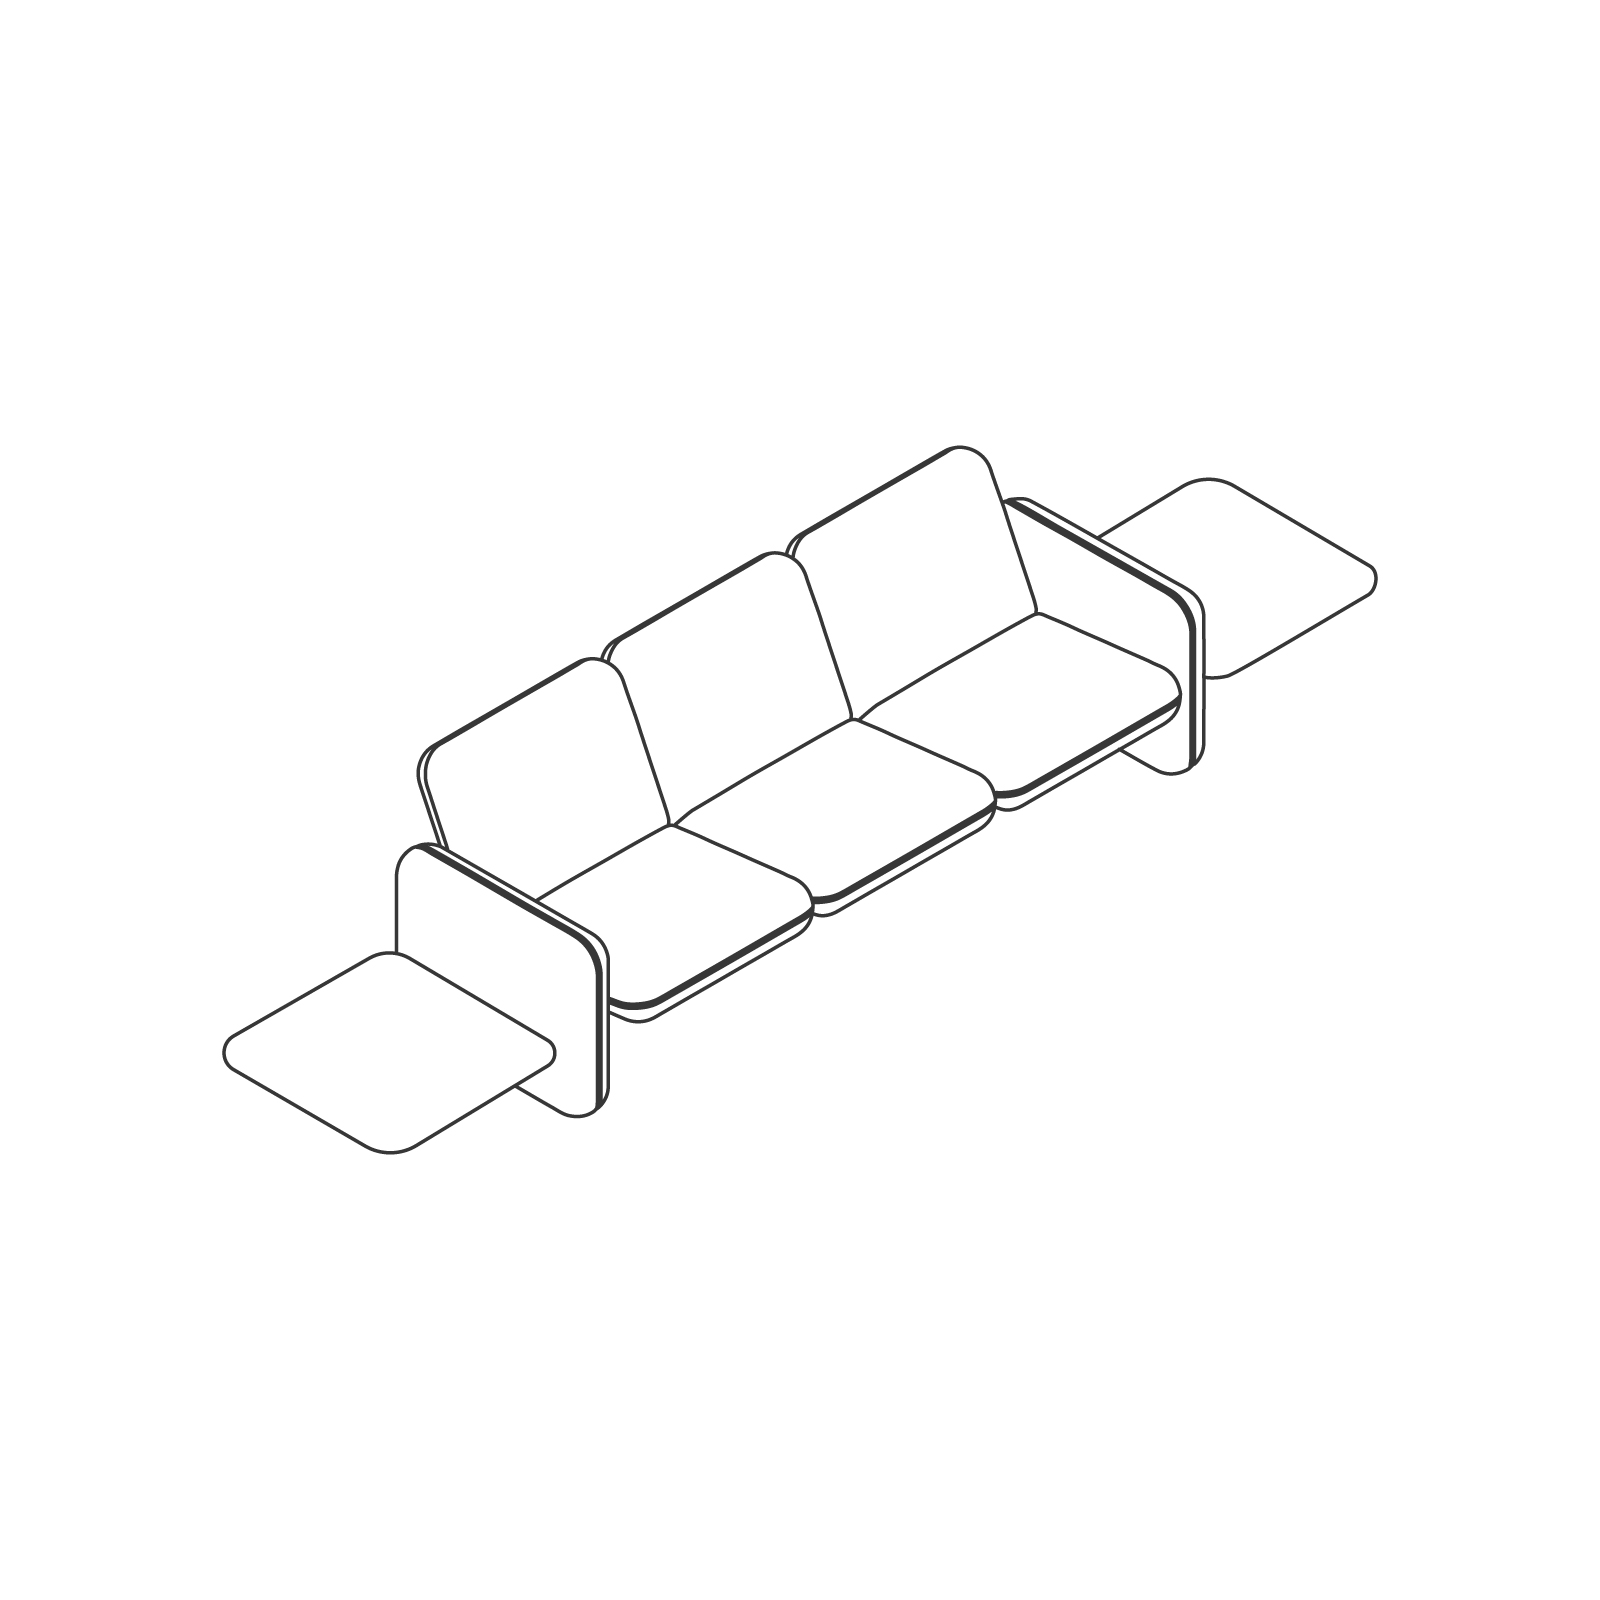 Uno schizzo - Gruppo di divani modulari Wilkes - Tavolo a sinistra - 3 posti - Tavolo a destra